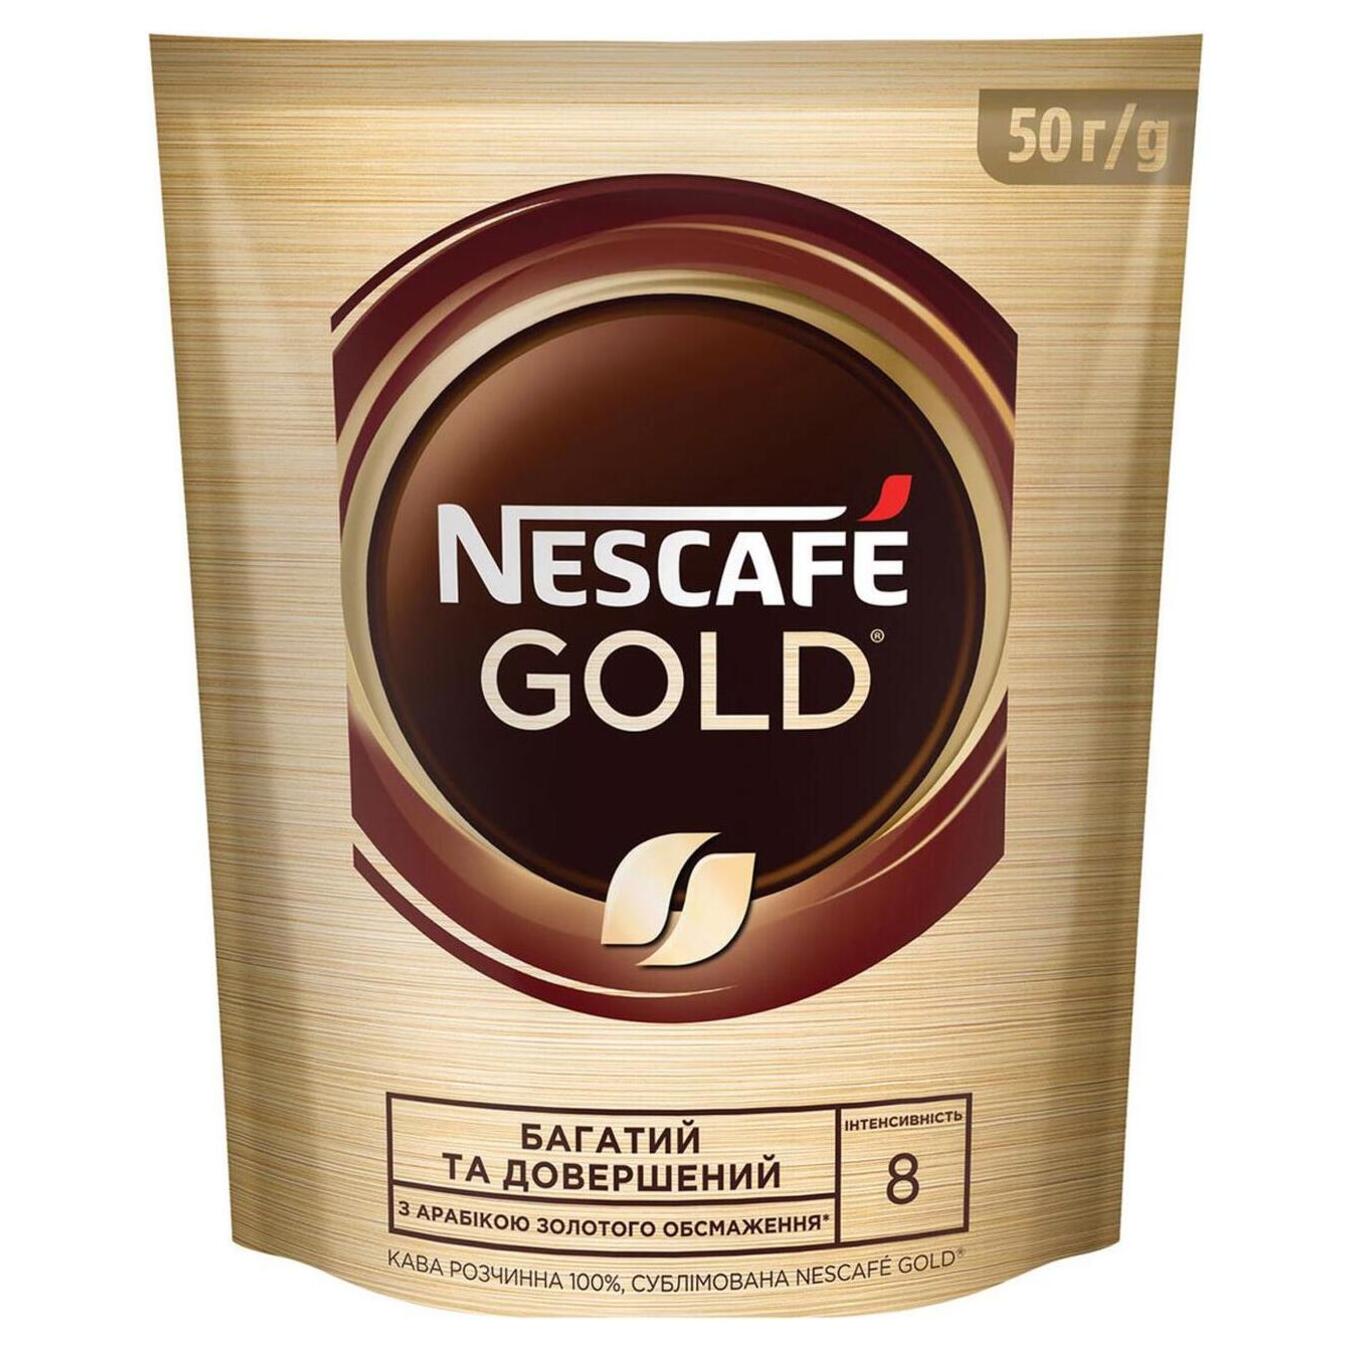 Кофе Nescafe Gold растворимая натуральная мягкая упаковка 50г